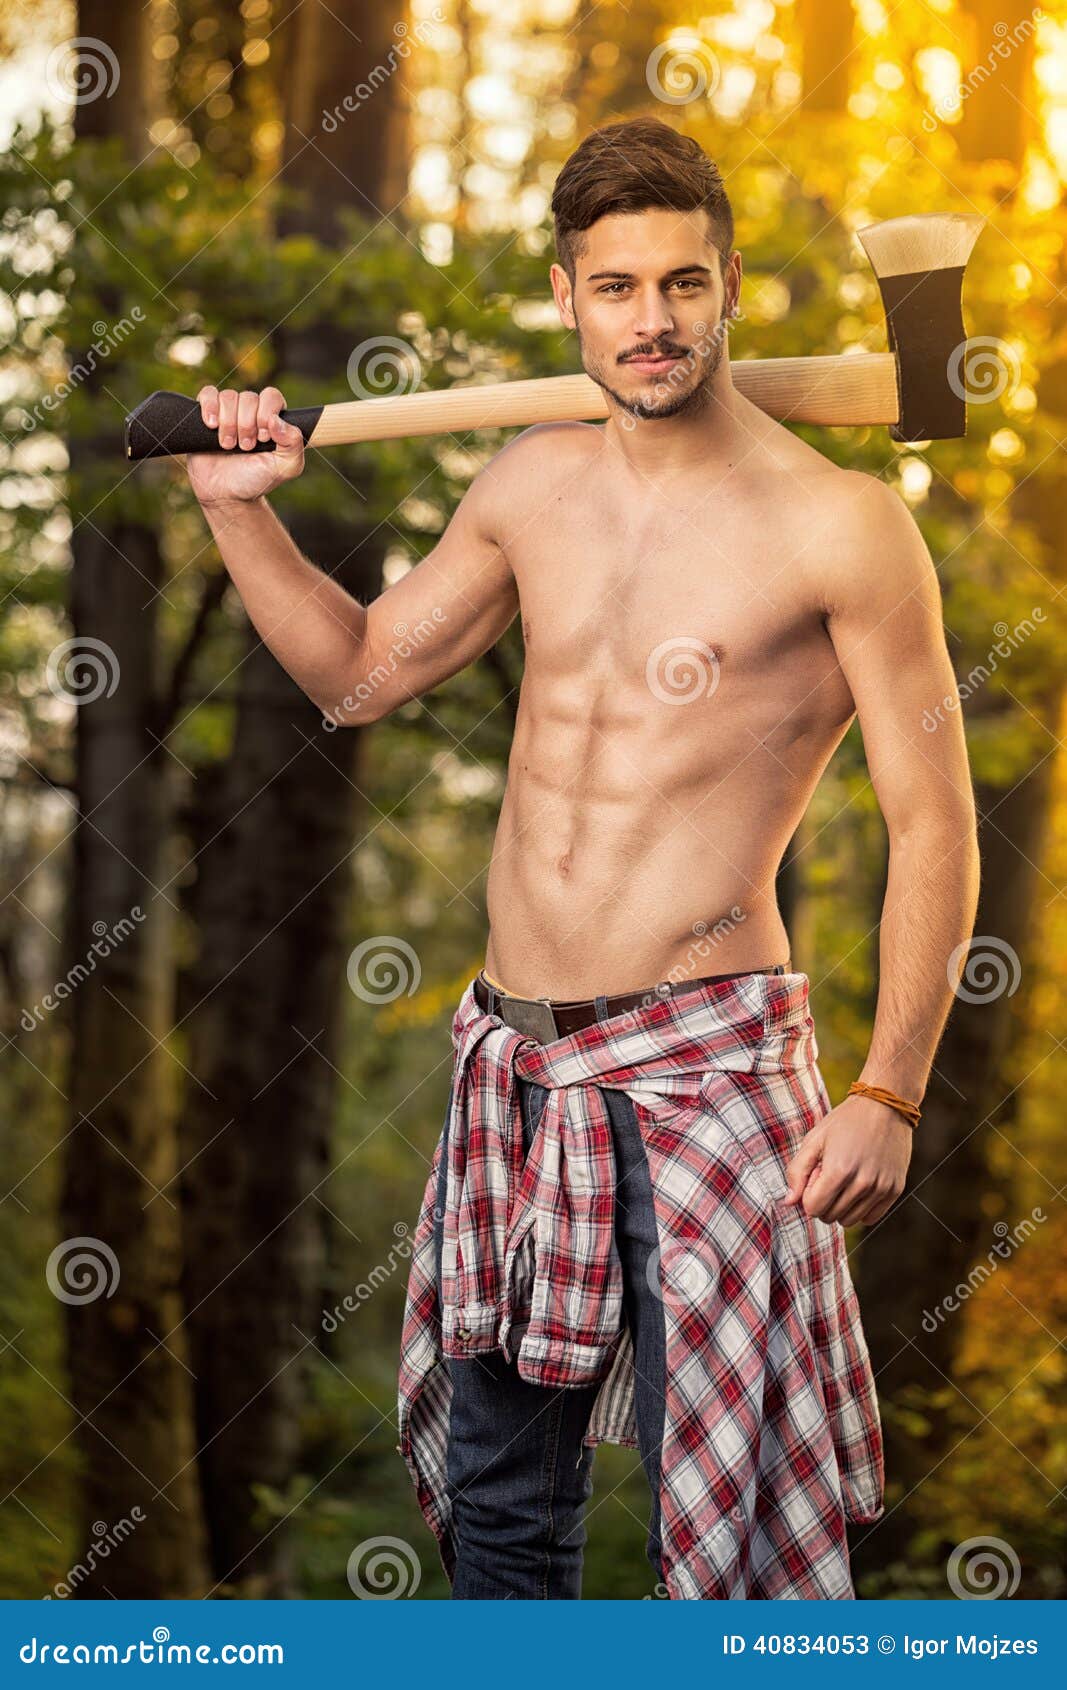 Sexy naked lumberjack men